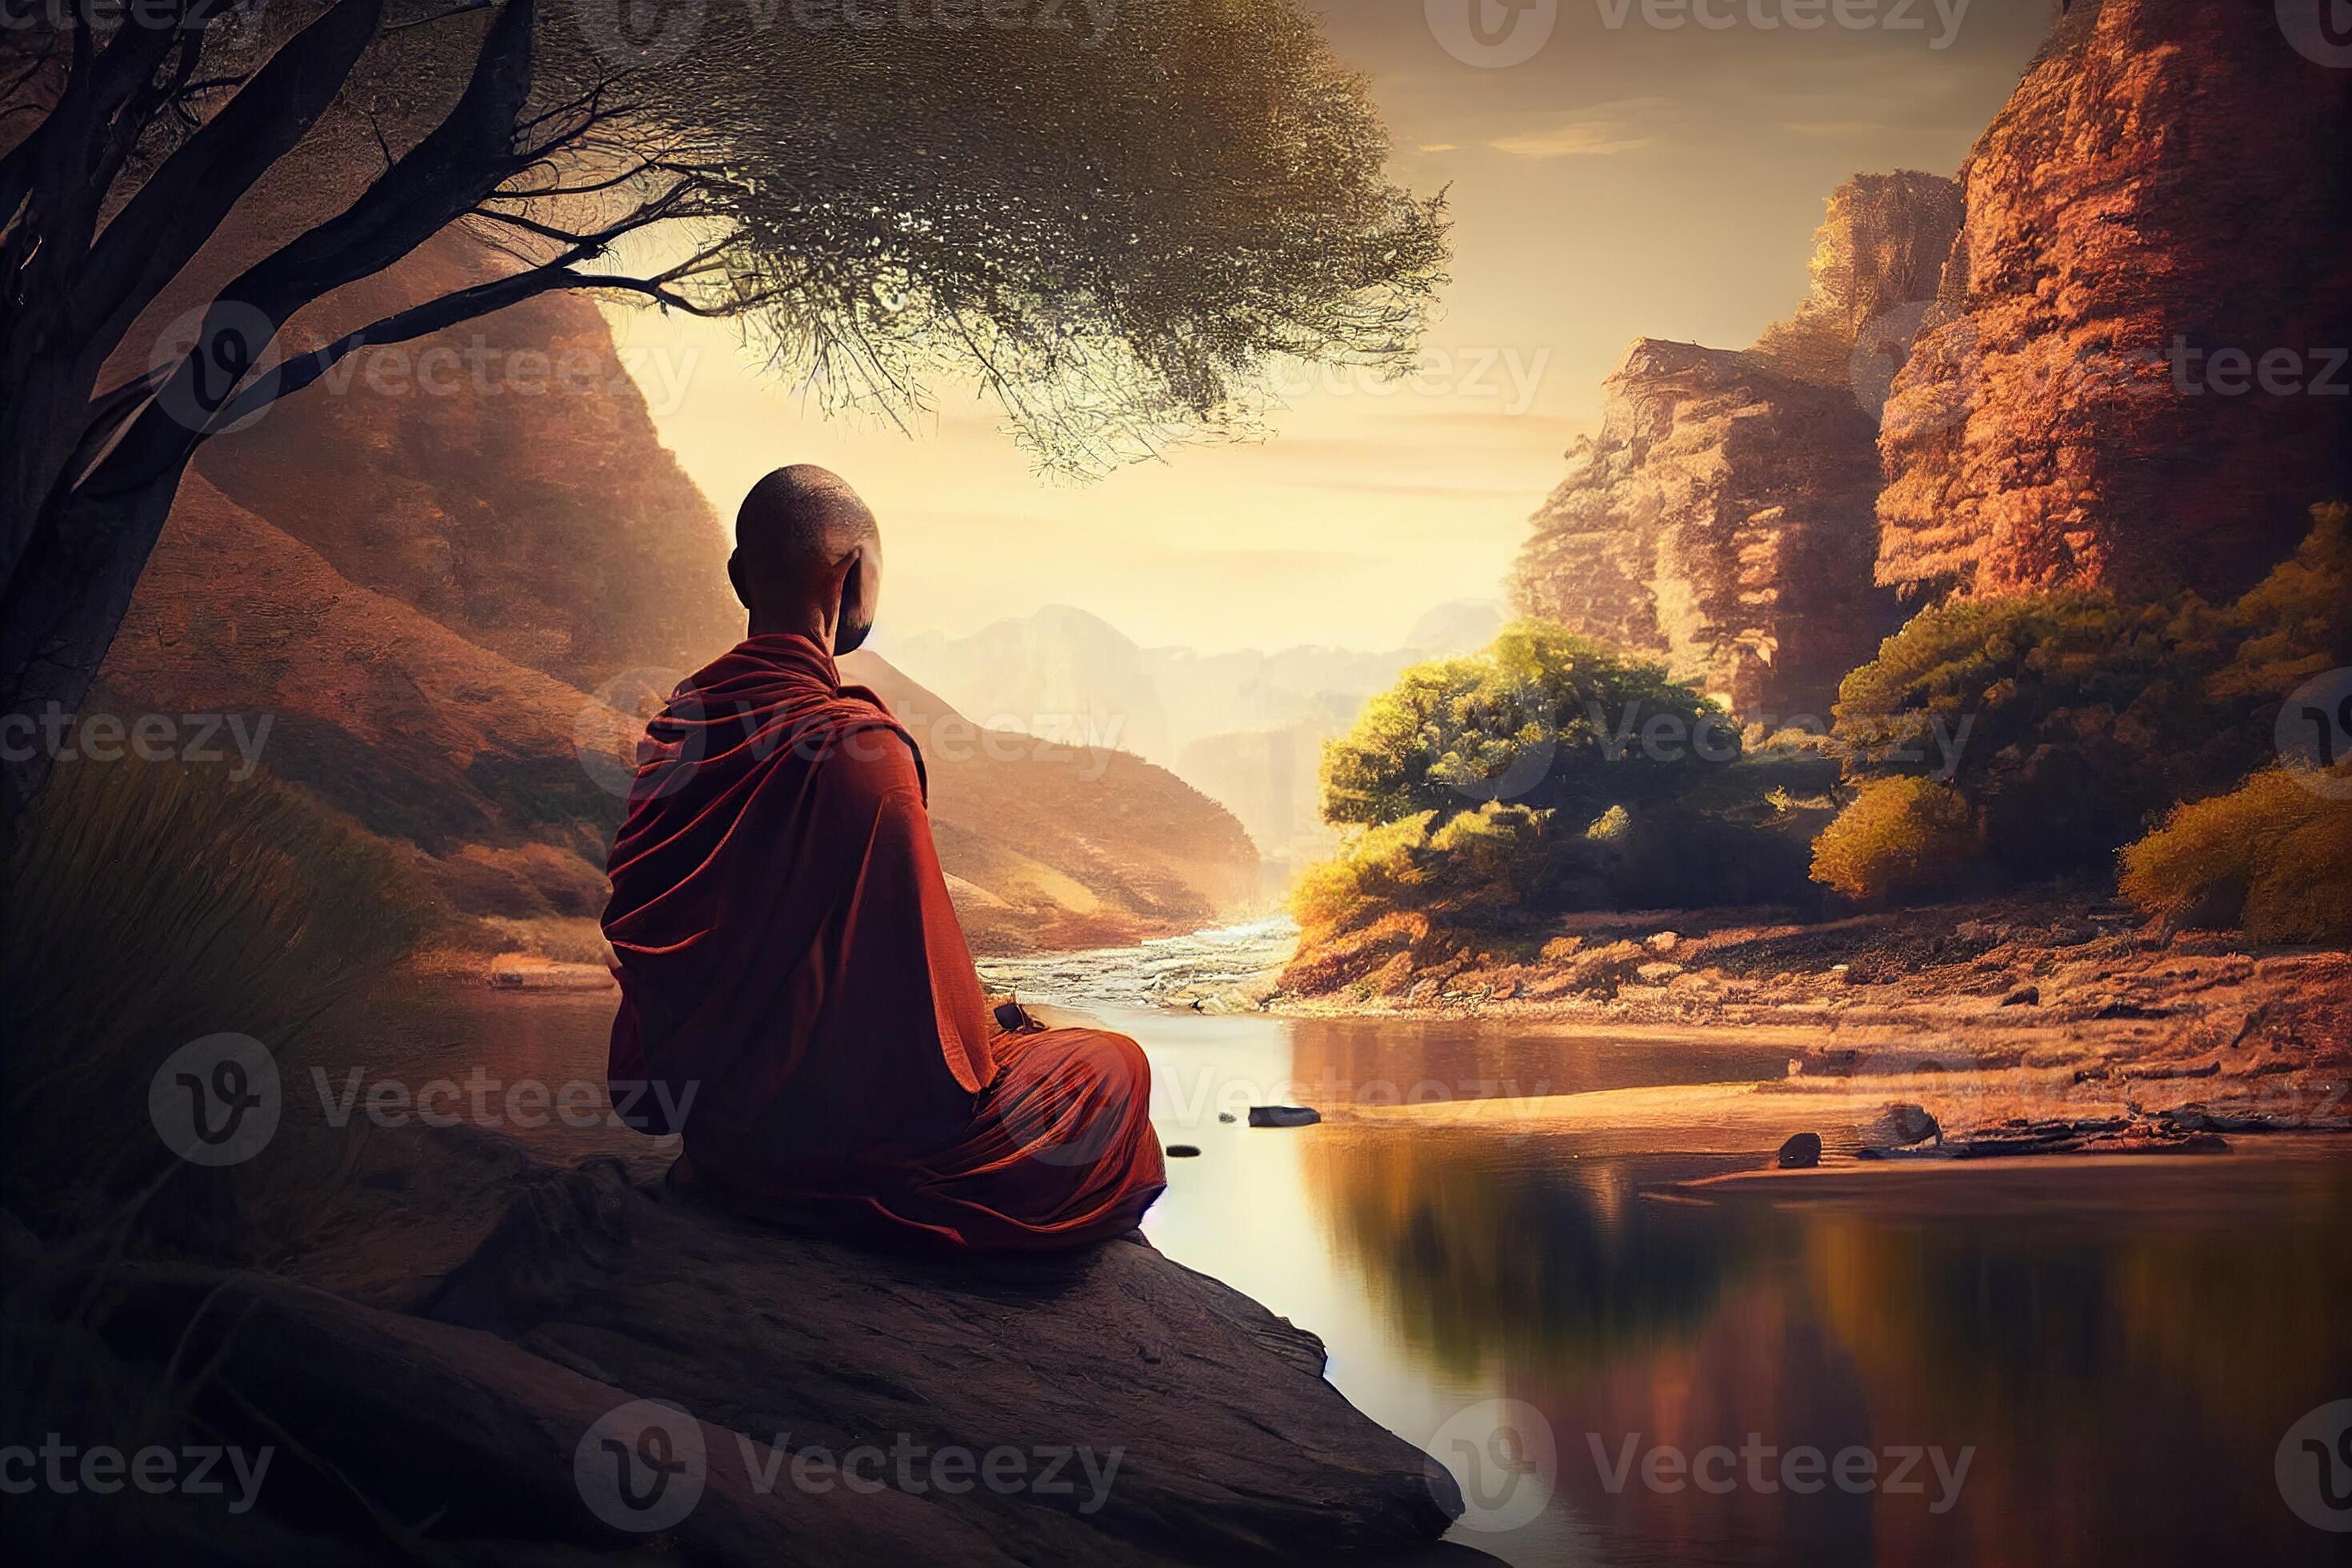 Meditate | Meditative Mind